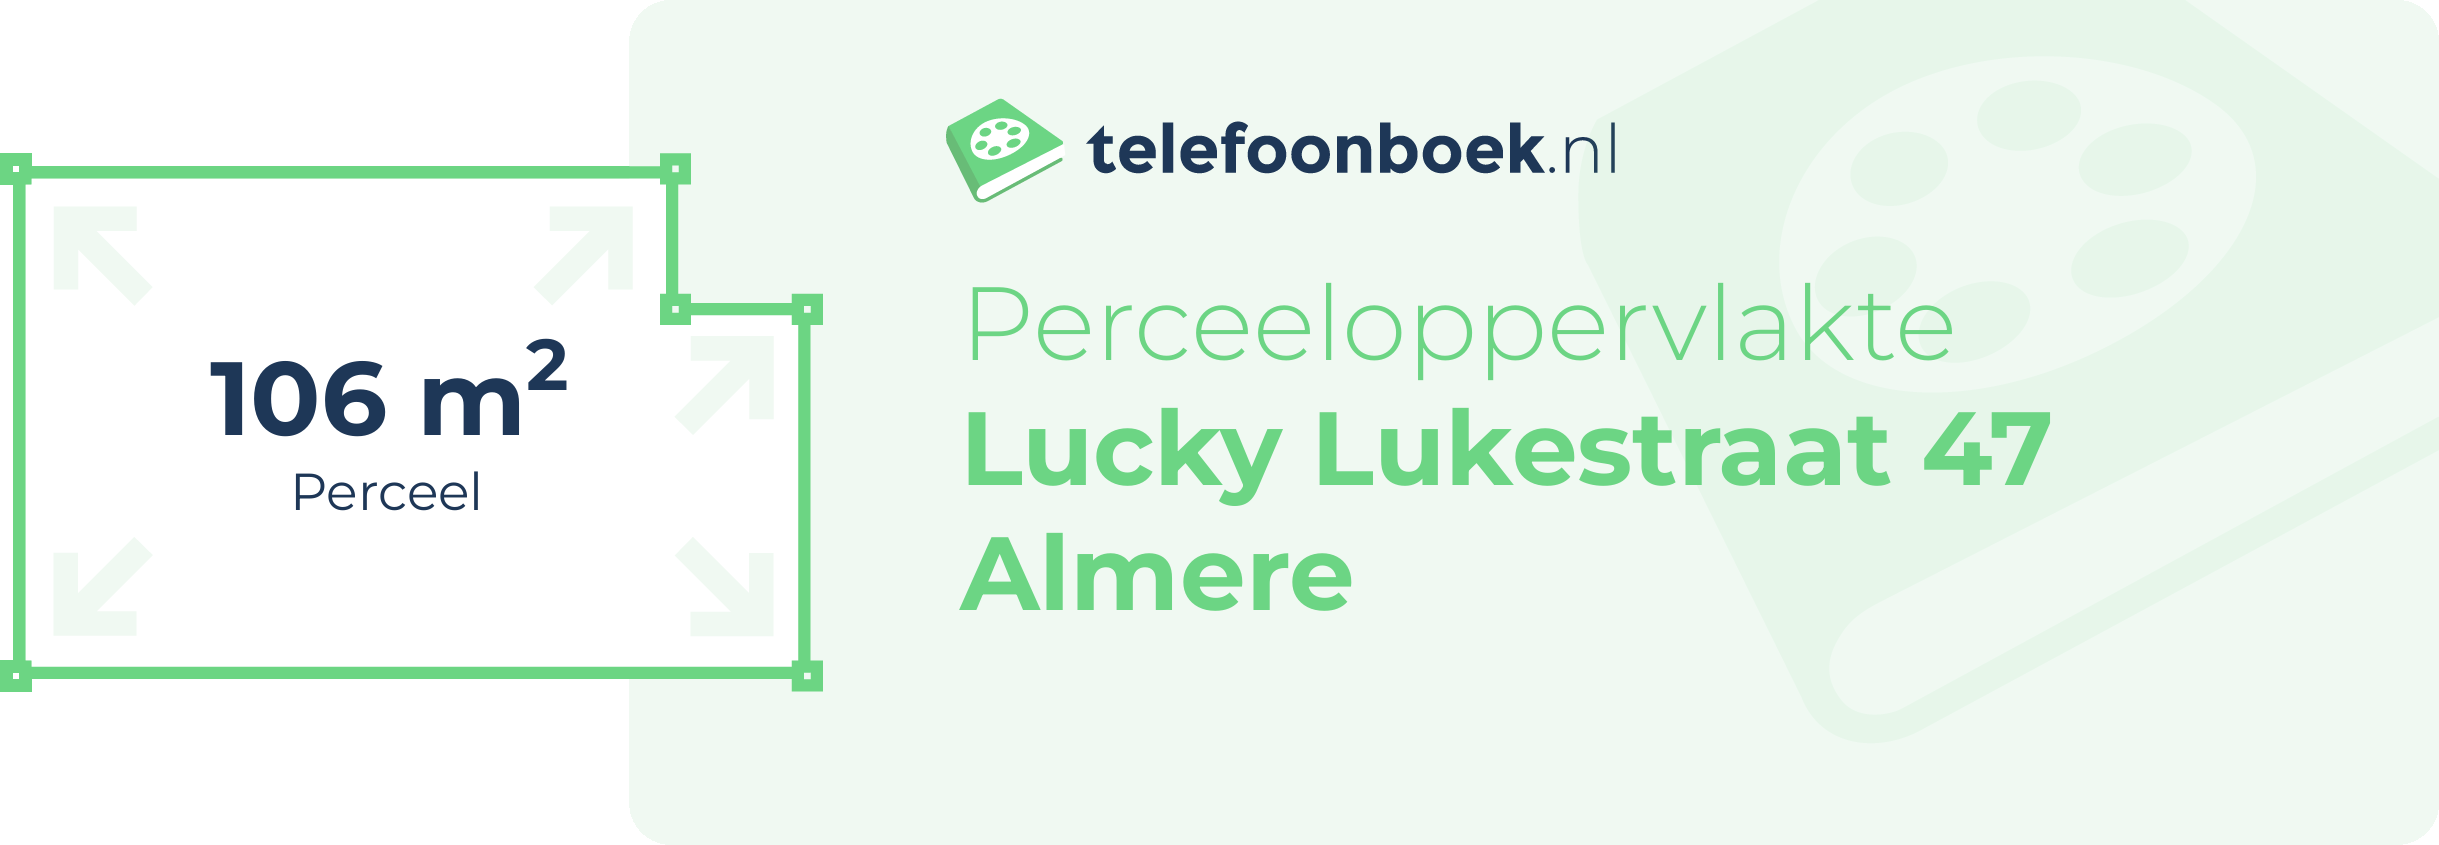 Perceeloppervlakte Lucky Lukestraat 47 Almere